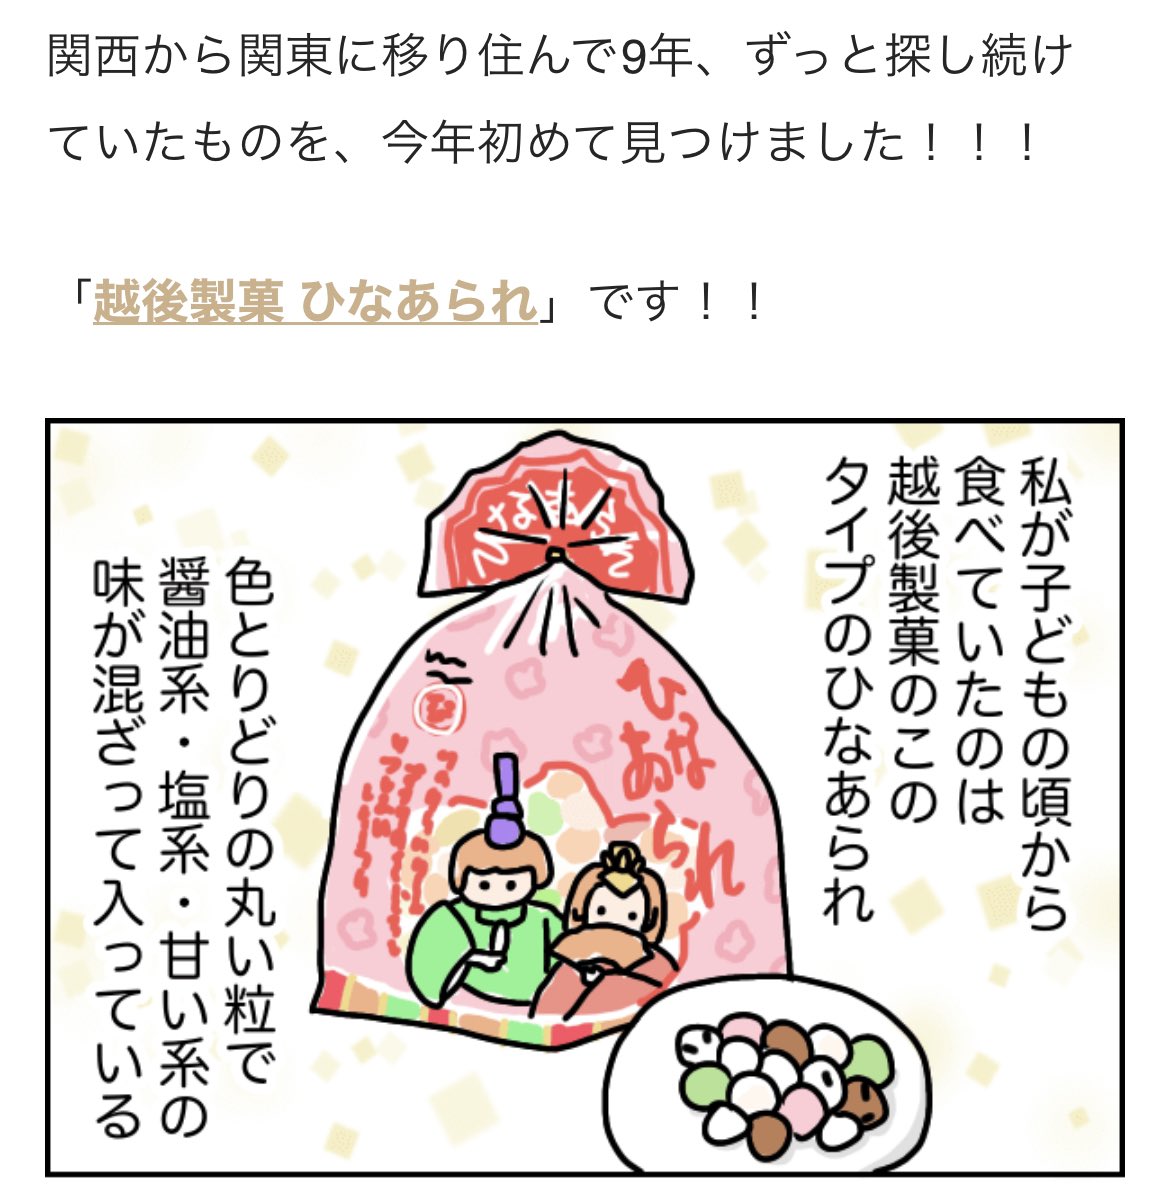 去年の連載記事より🎎
今年はこのイラスト柄じゃない、実写版お雛様がパッケージの越後製菓のひなあられを埼玉のスーパーで発見しました!! https://t.co/oAhTL0qfjh 